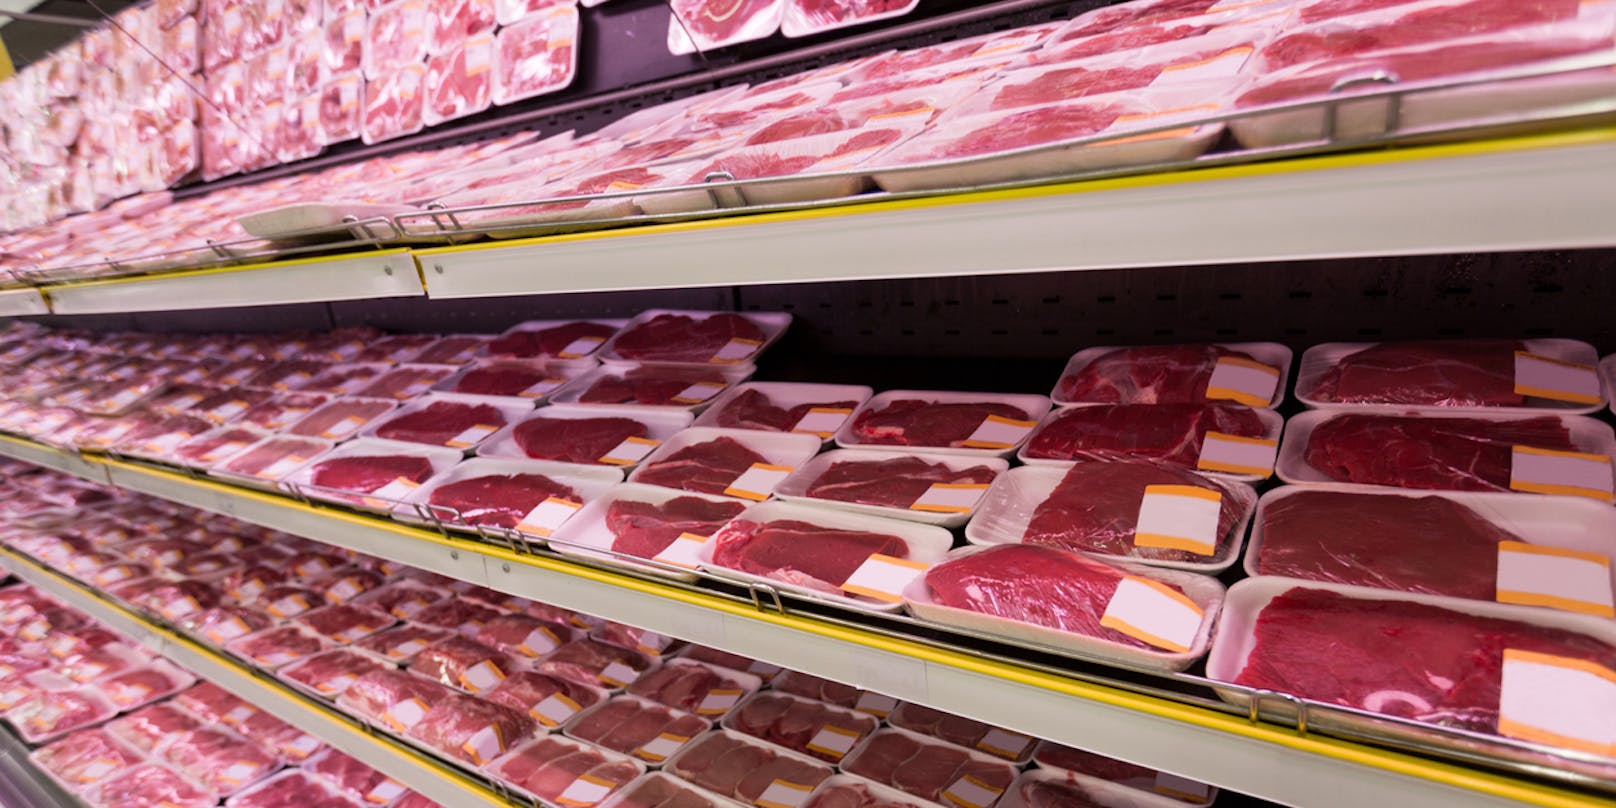 Weg von Billigfleisch und Massentierhaltung. Tierschutz- und Umweltschutzorganisationen fordern einen Systemwechsel in der Fleischindustrie. 